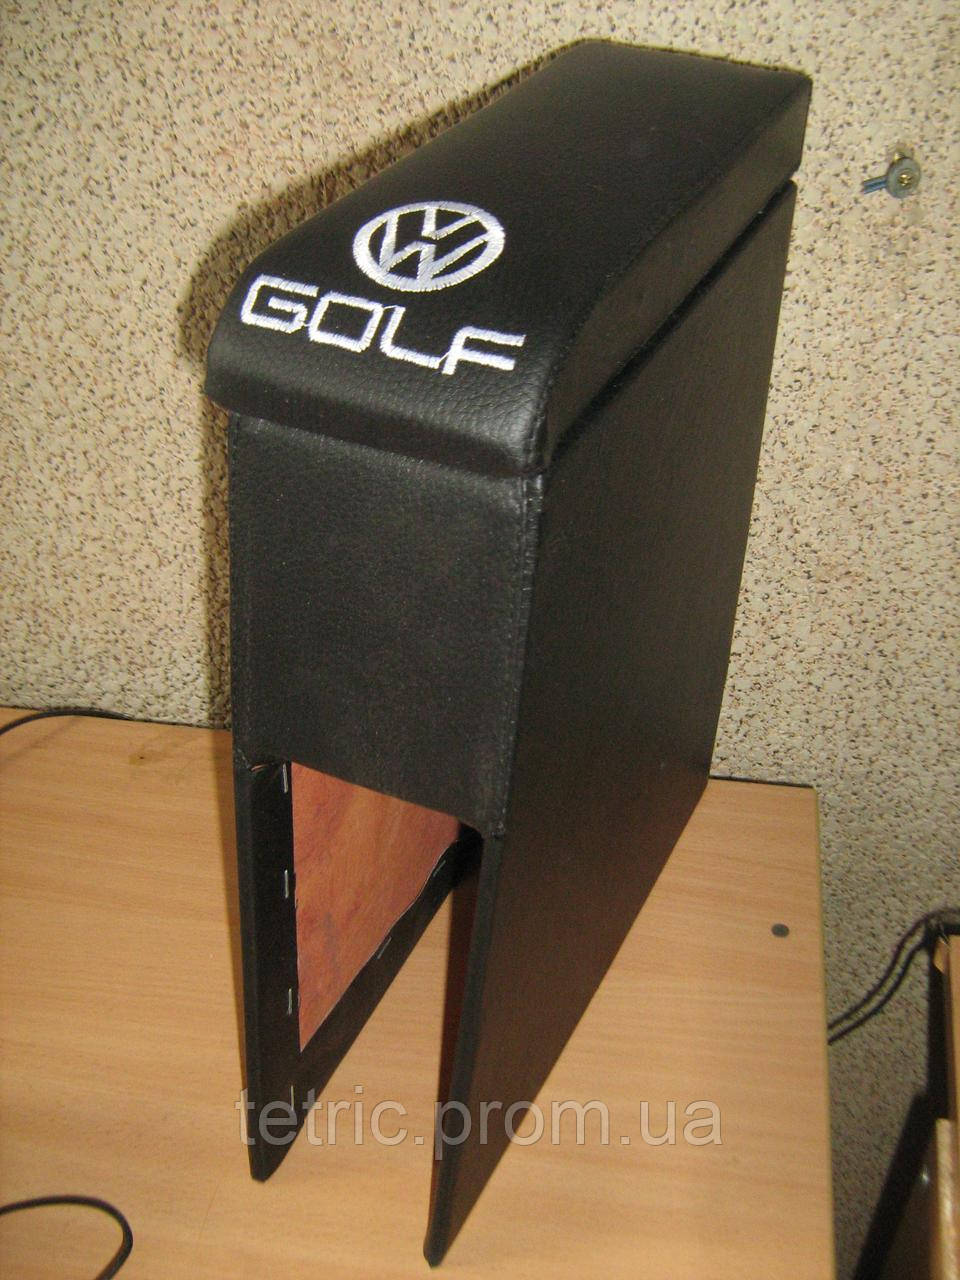 Тюнинг Подлокотник Volkswagen Golf 2 (Фольксваген Гольф 2) Цвет на выб